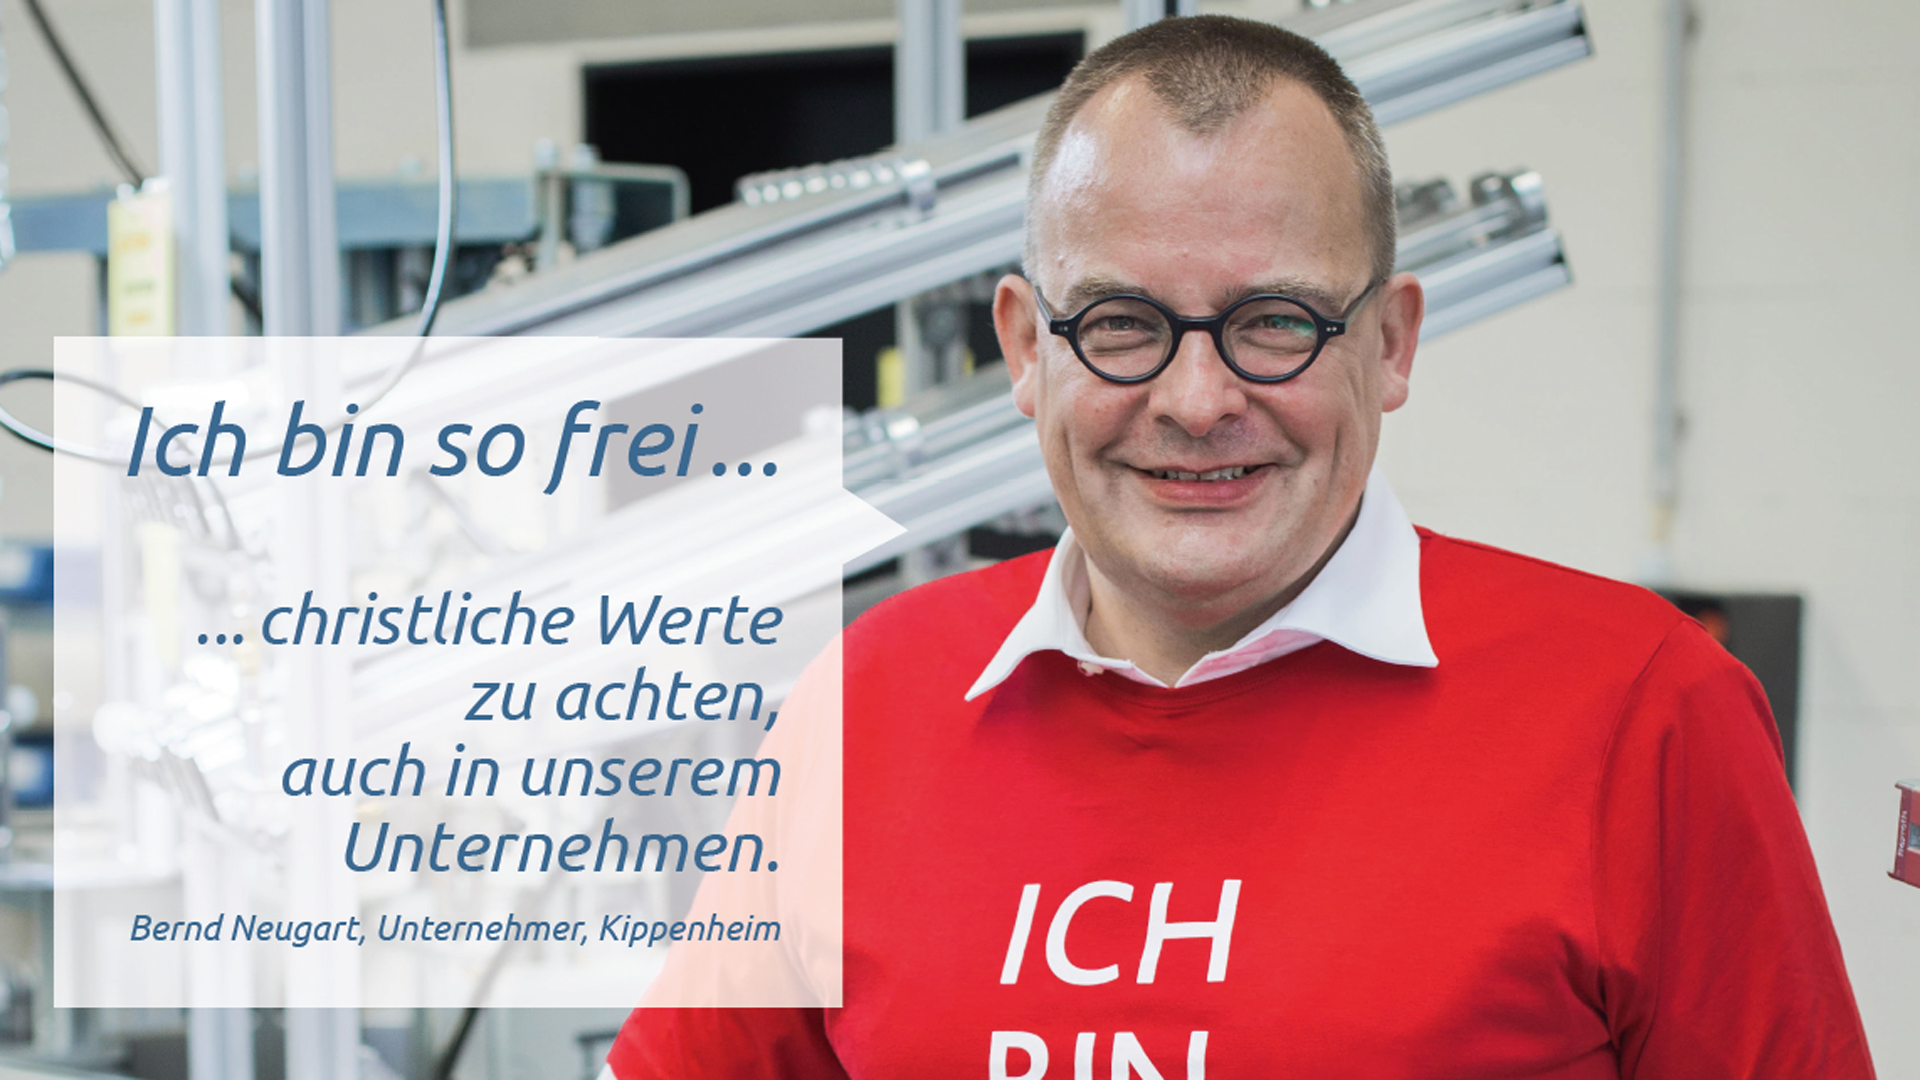 Das Plakat mit dem Porträt von Unternehmer Bernd Neugart trägt den Satz: „Ich bin so frei, christliche Werte zu achten. Auch in unserem Unternehmen“.